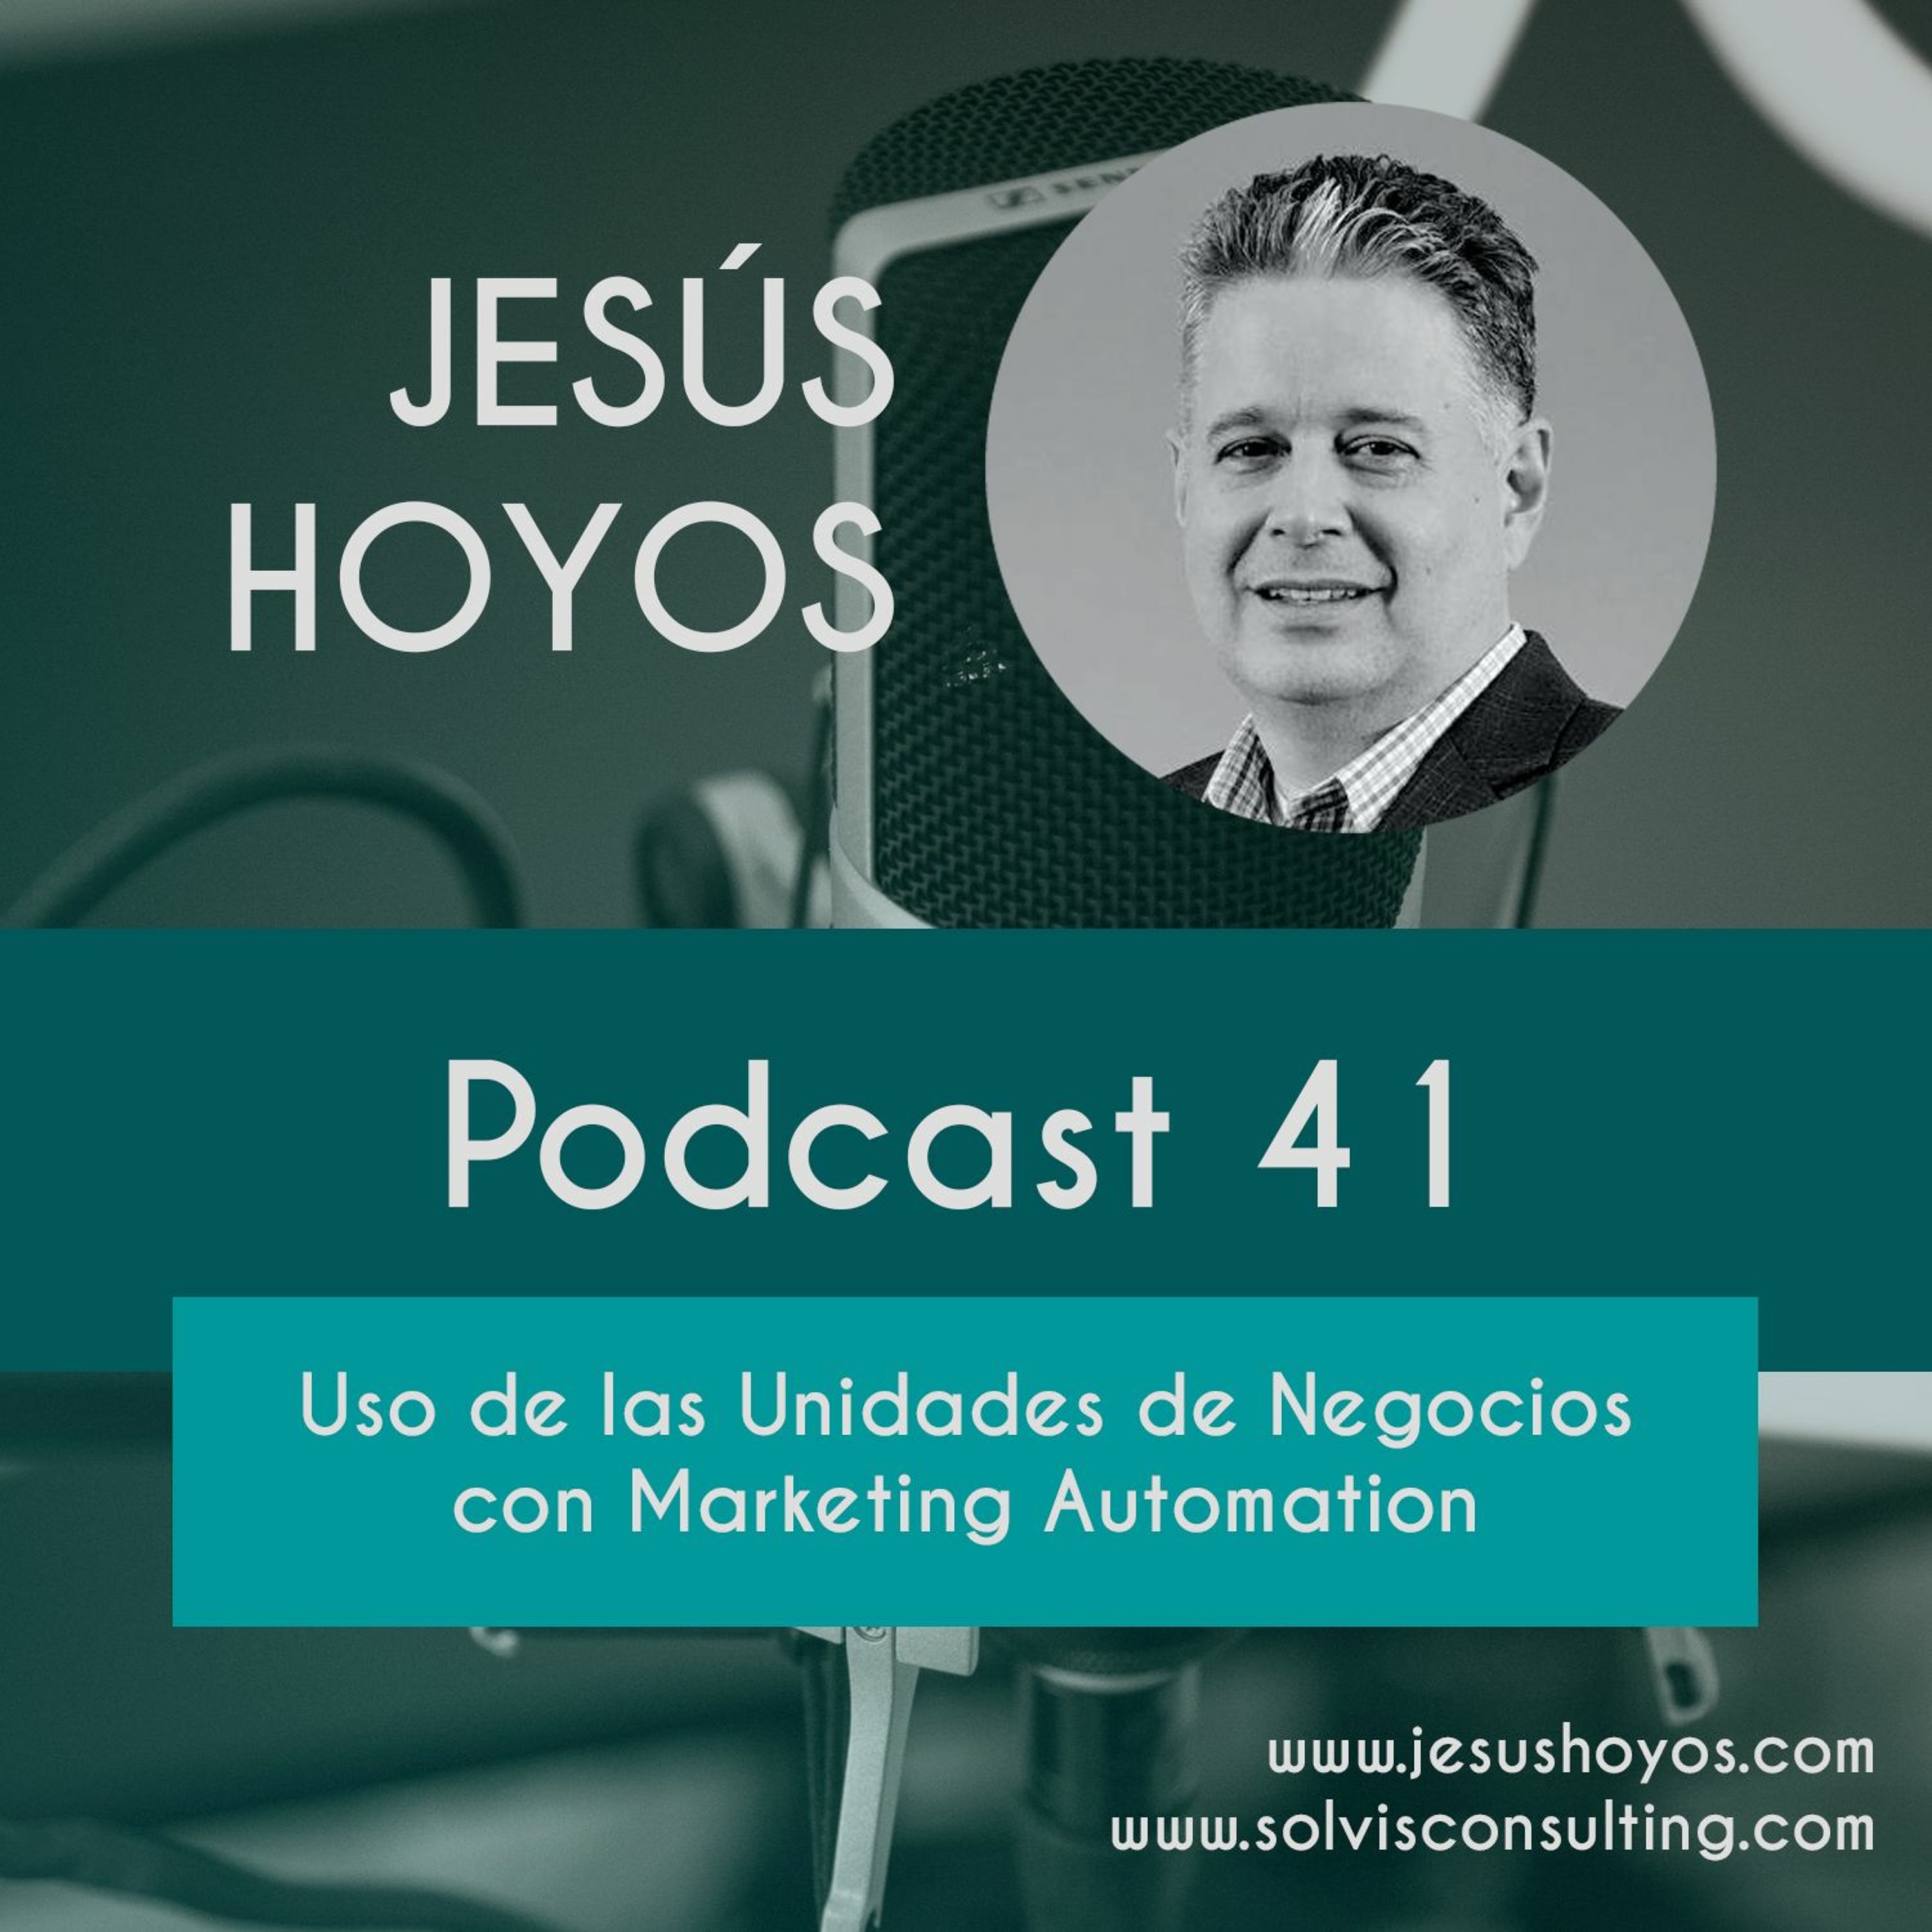 Podcast 41 - Uso de las Unidades de Negocios con Marketing Automation Image